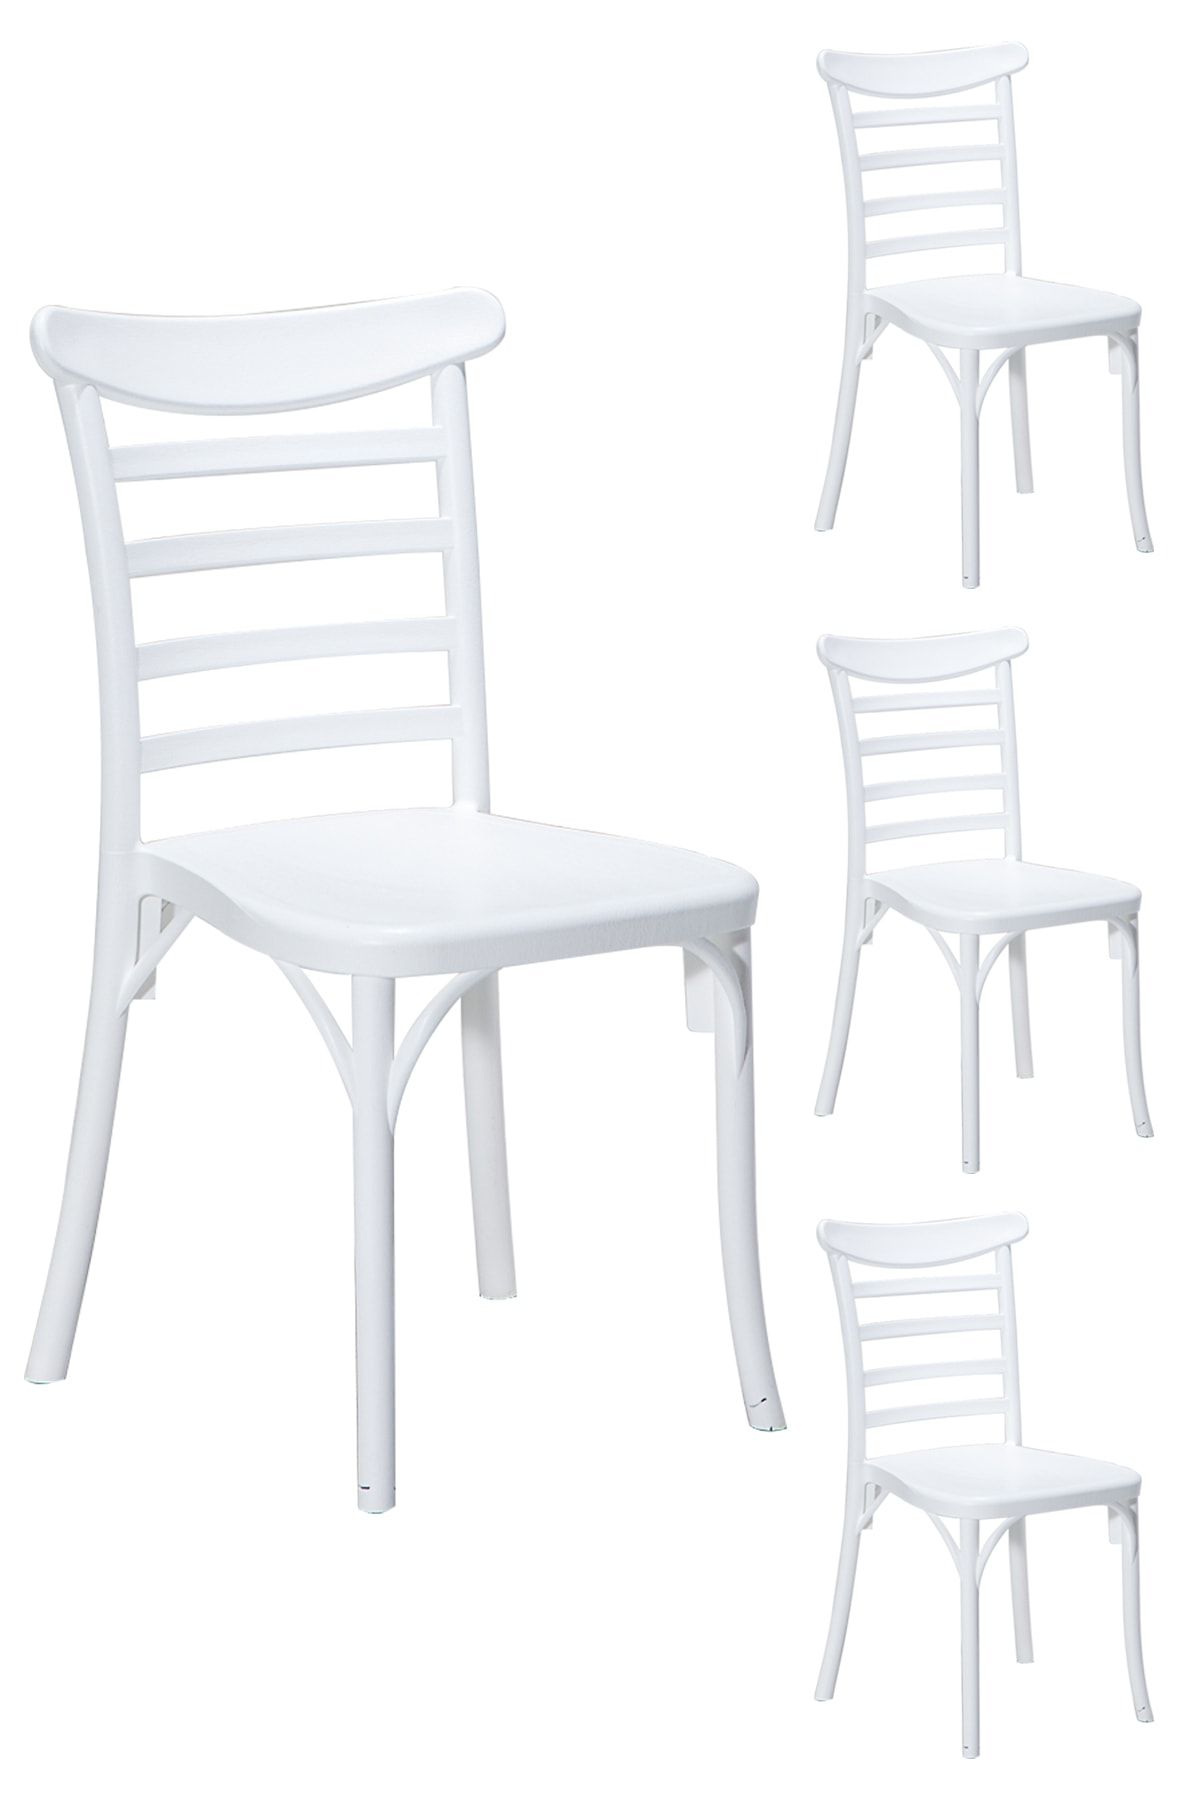 SANDALİE 4 Adet Efes Beyaz Sandalye / Balkon-bahçe-mutfak